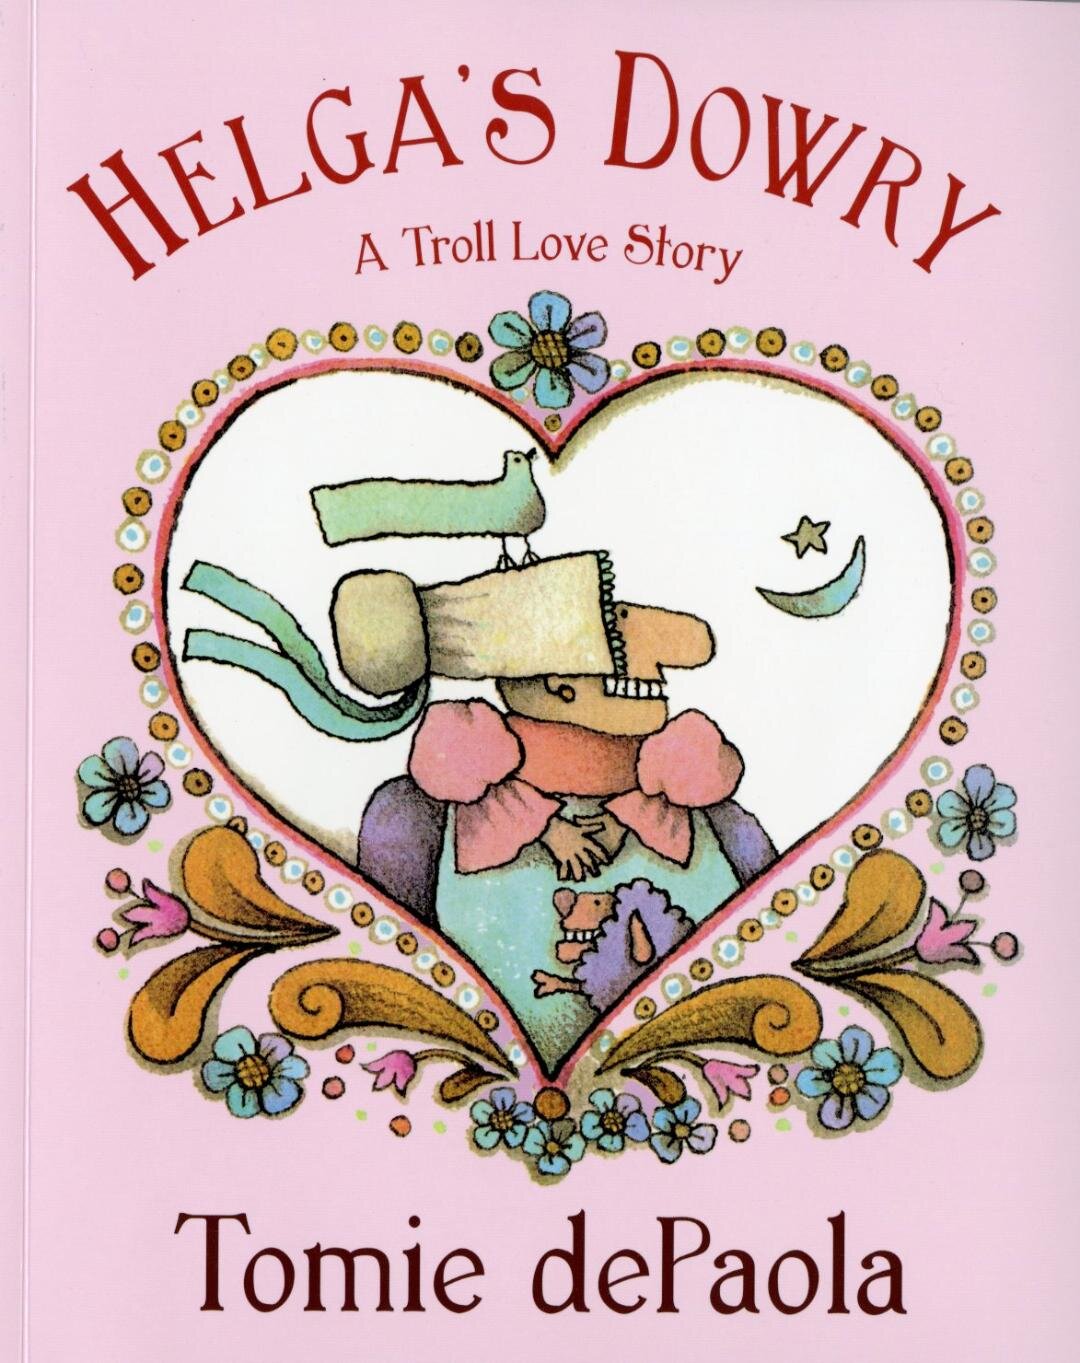 Helga's Dowry 2019.jpg